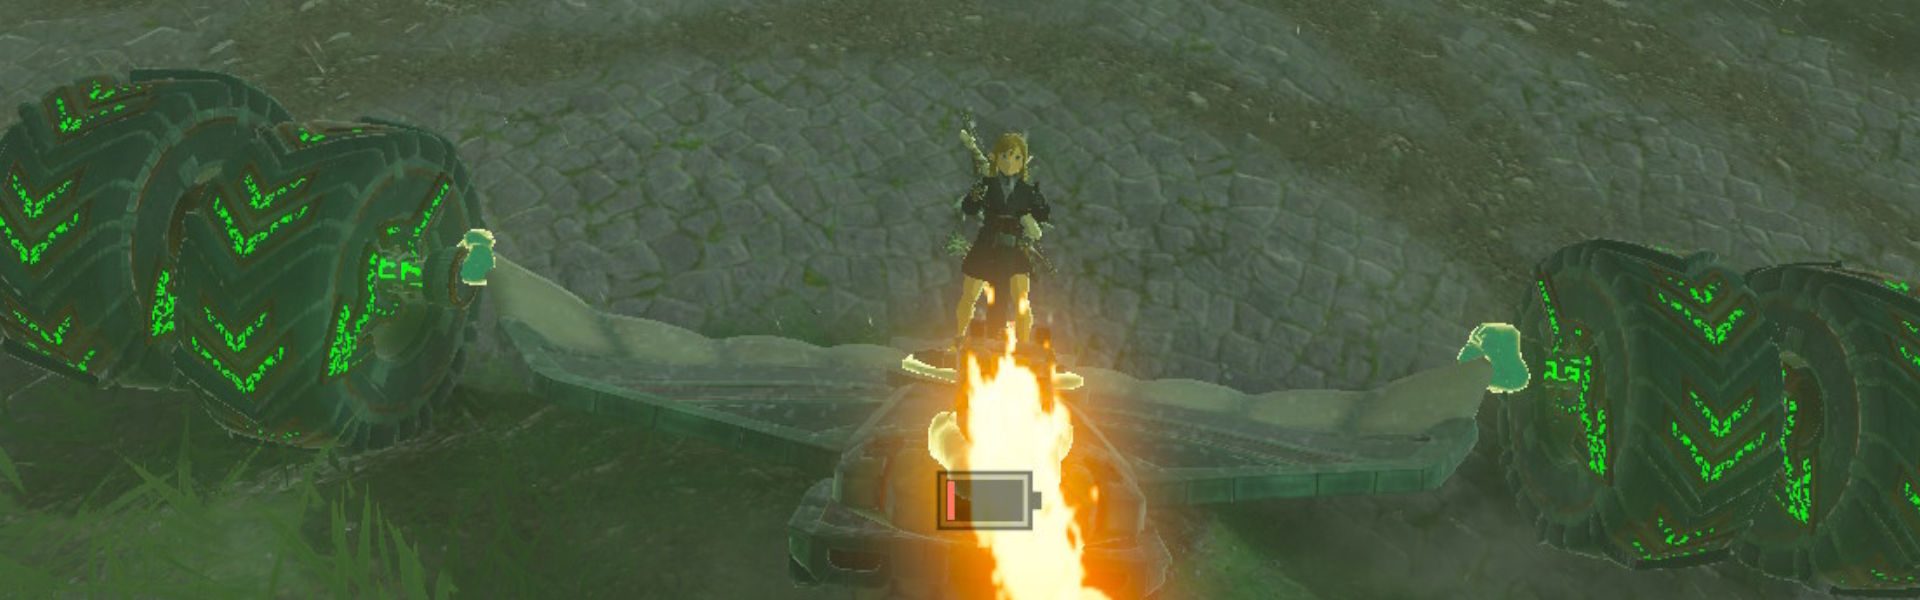 Zelda: ultrahandowe kreacje TotK już wymykają się spod kontroli